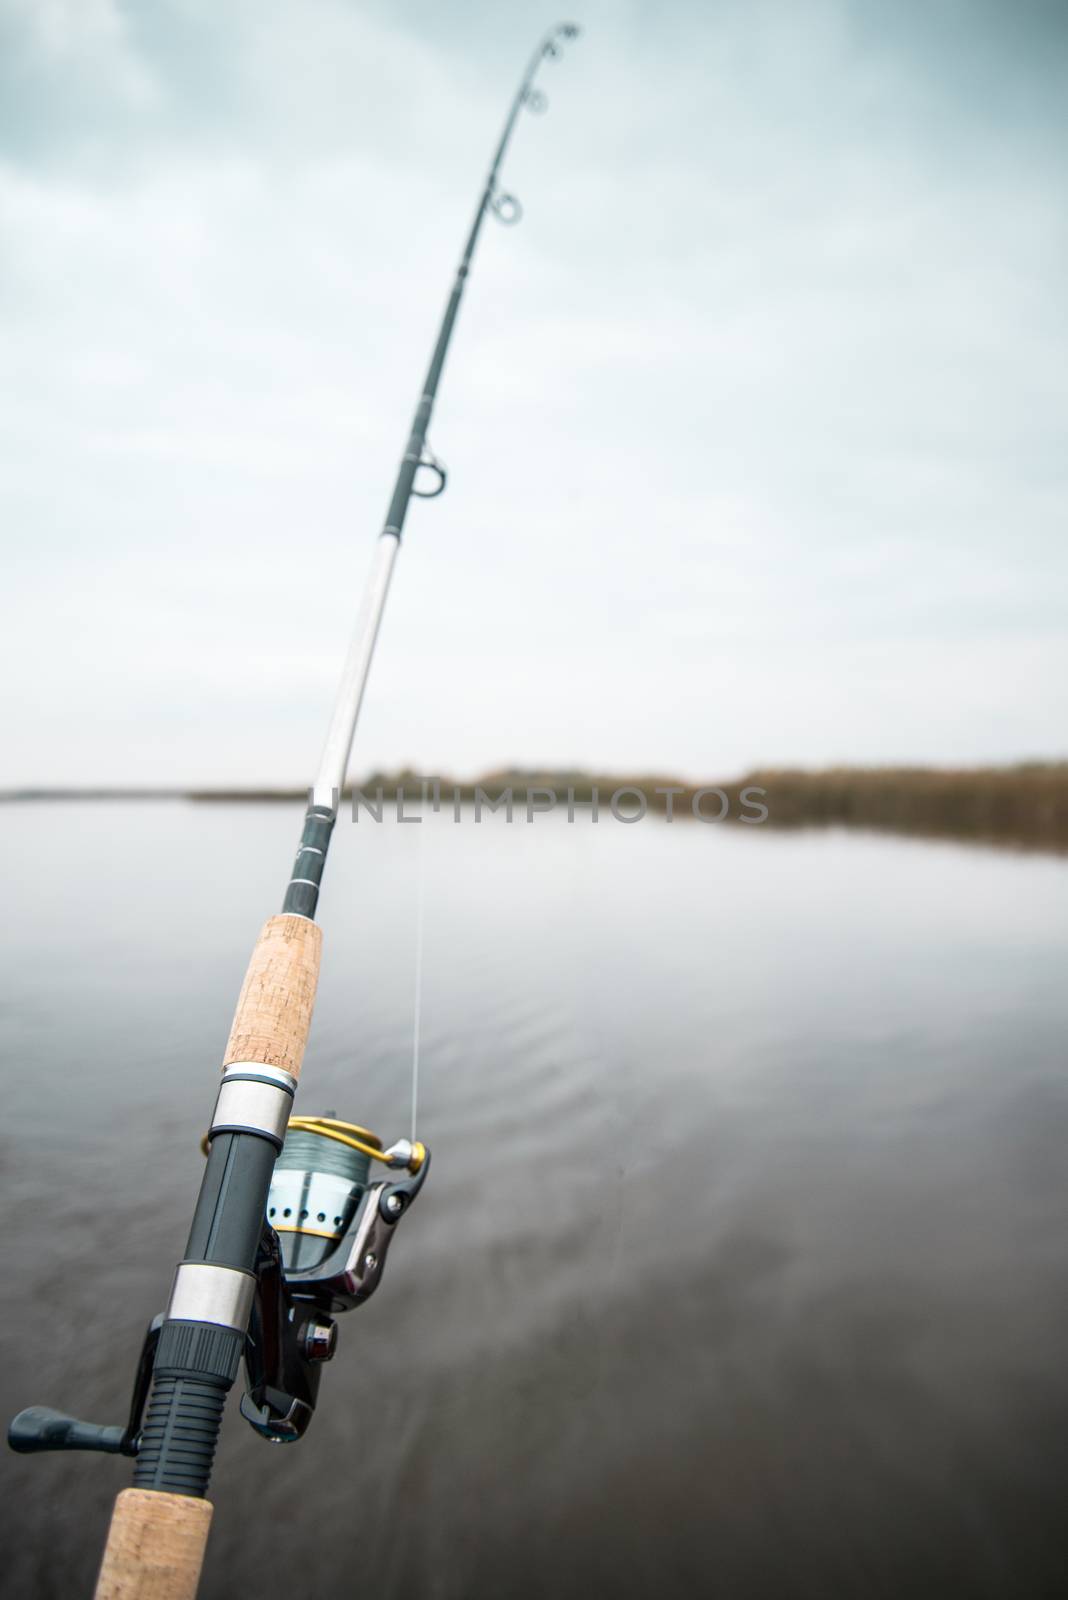 Fishing rod by Nickolya